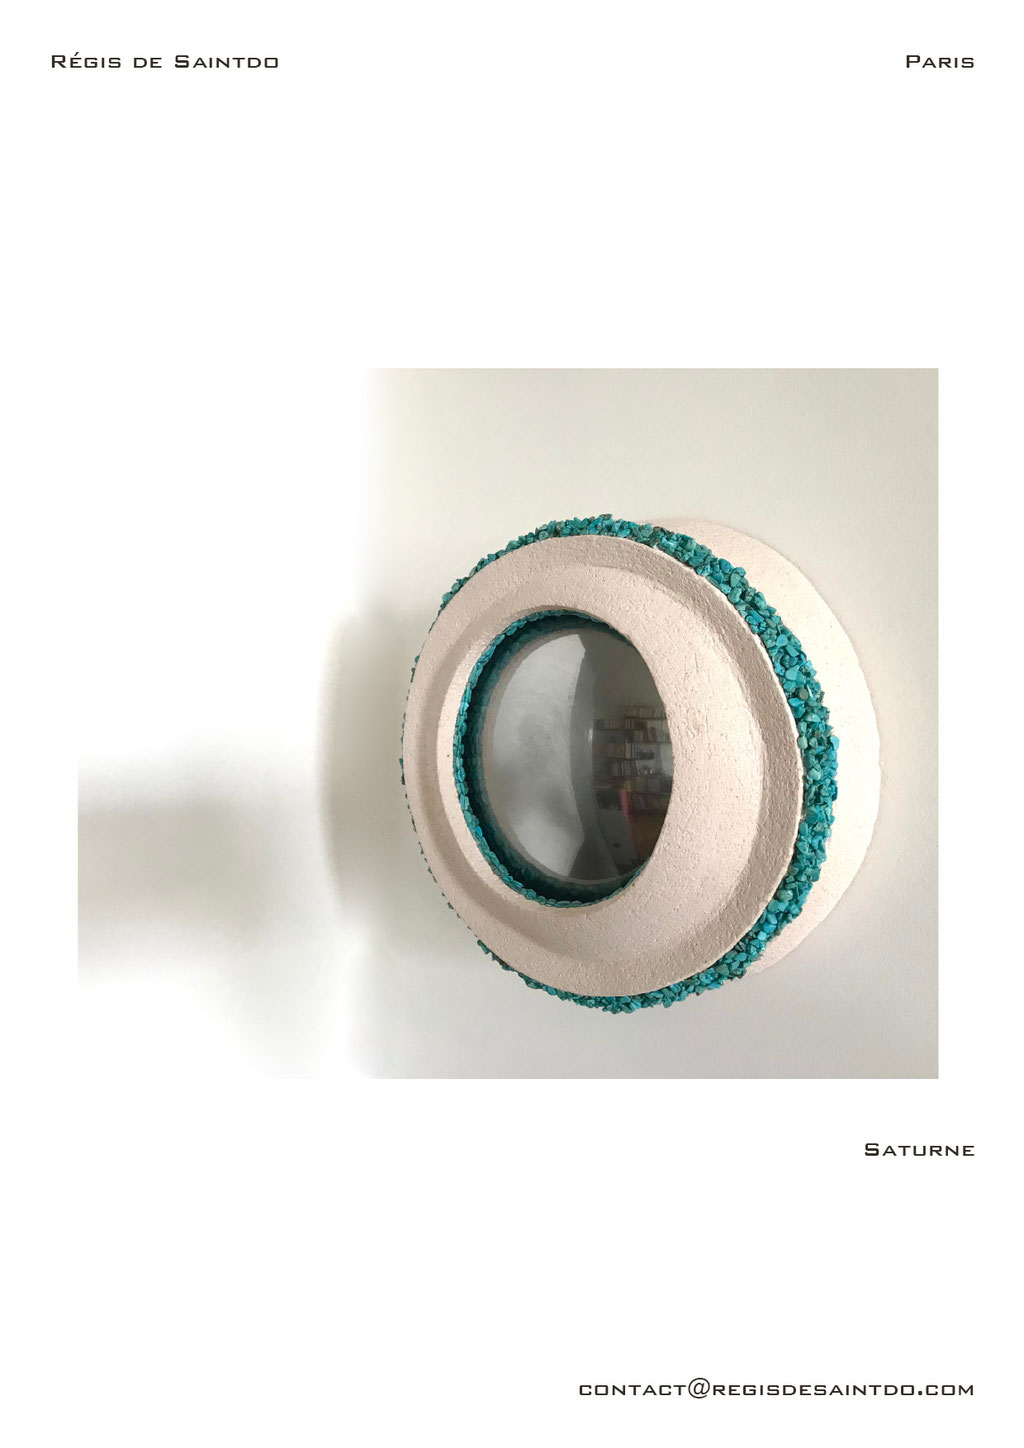 Miroir Saturne en céramique et howlites turquoise - fait main @Régis de Saintdo